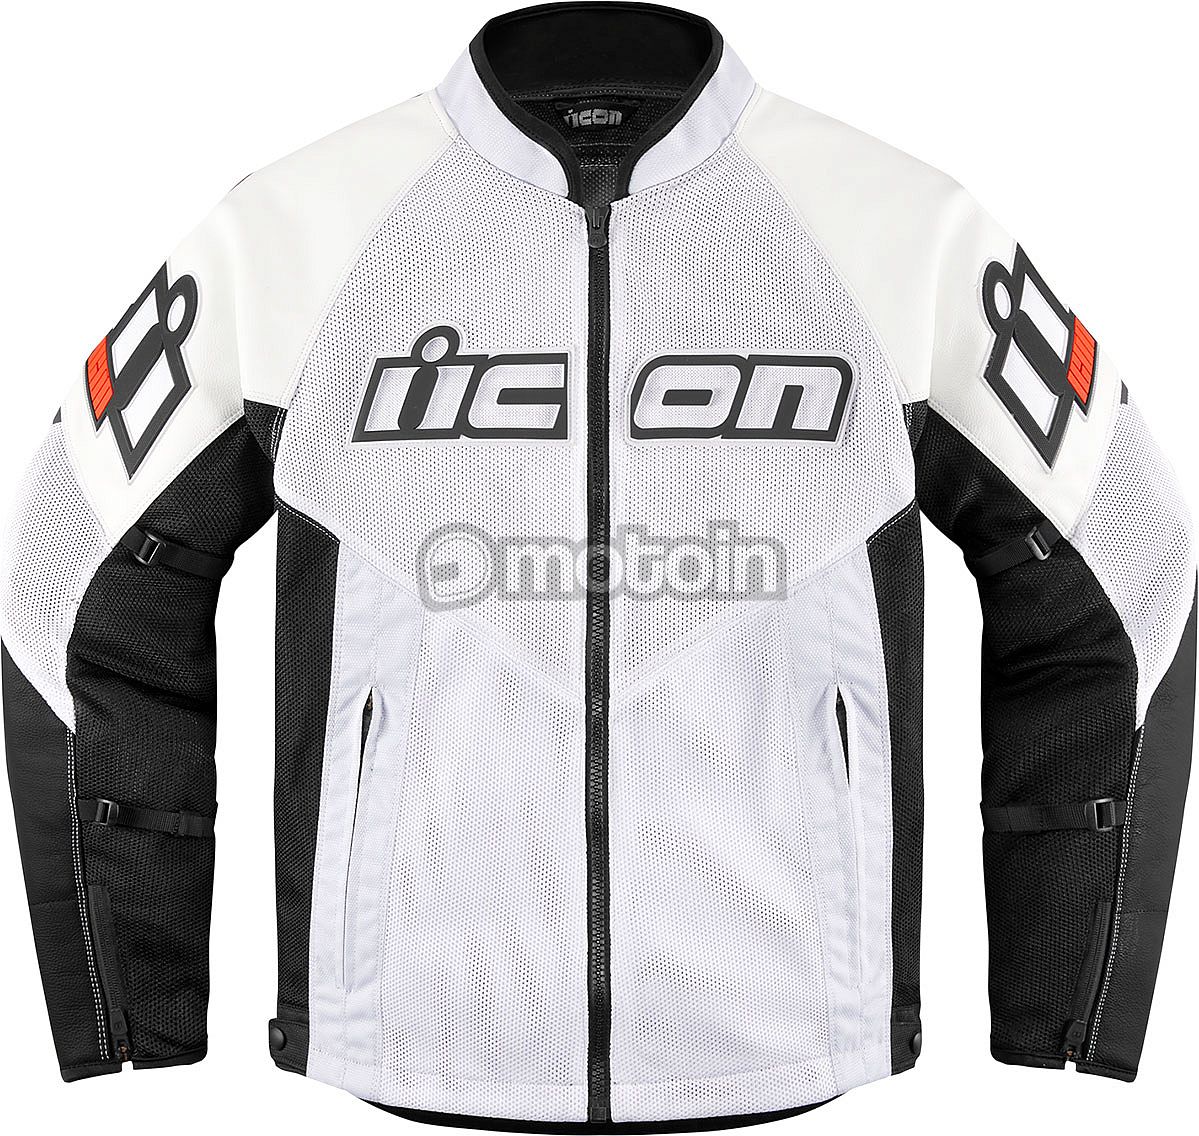 Icon Mesh AF leather/textile jacket, 2. valg element